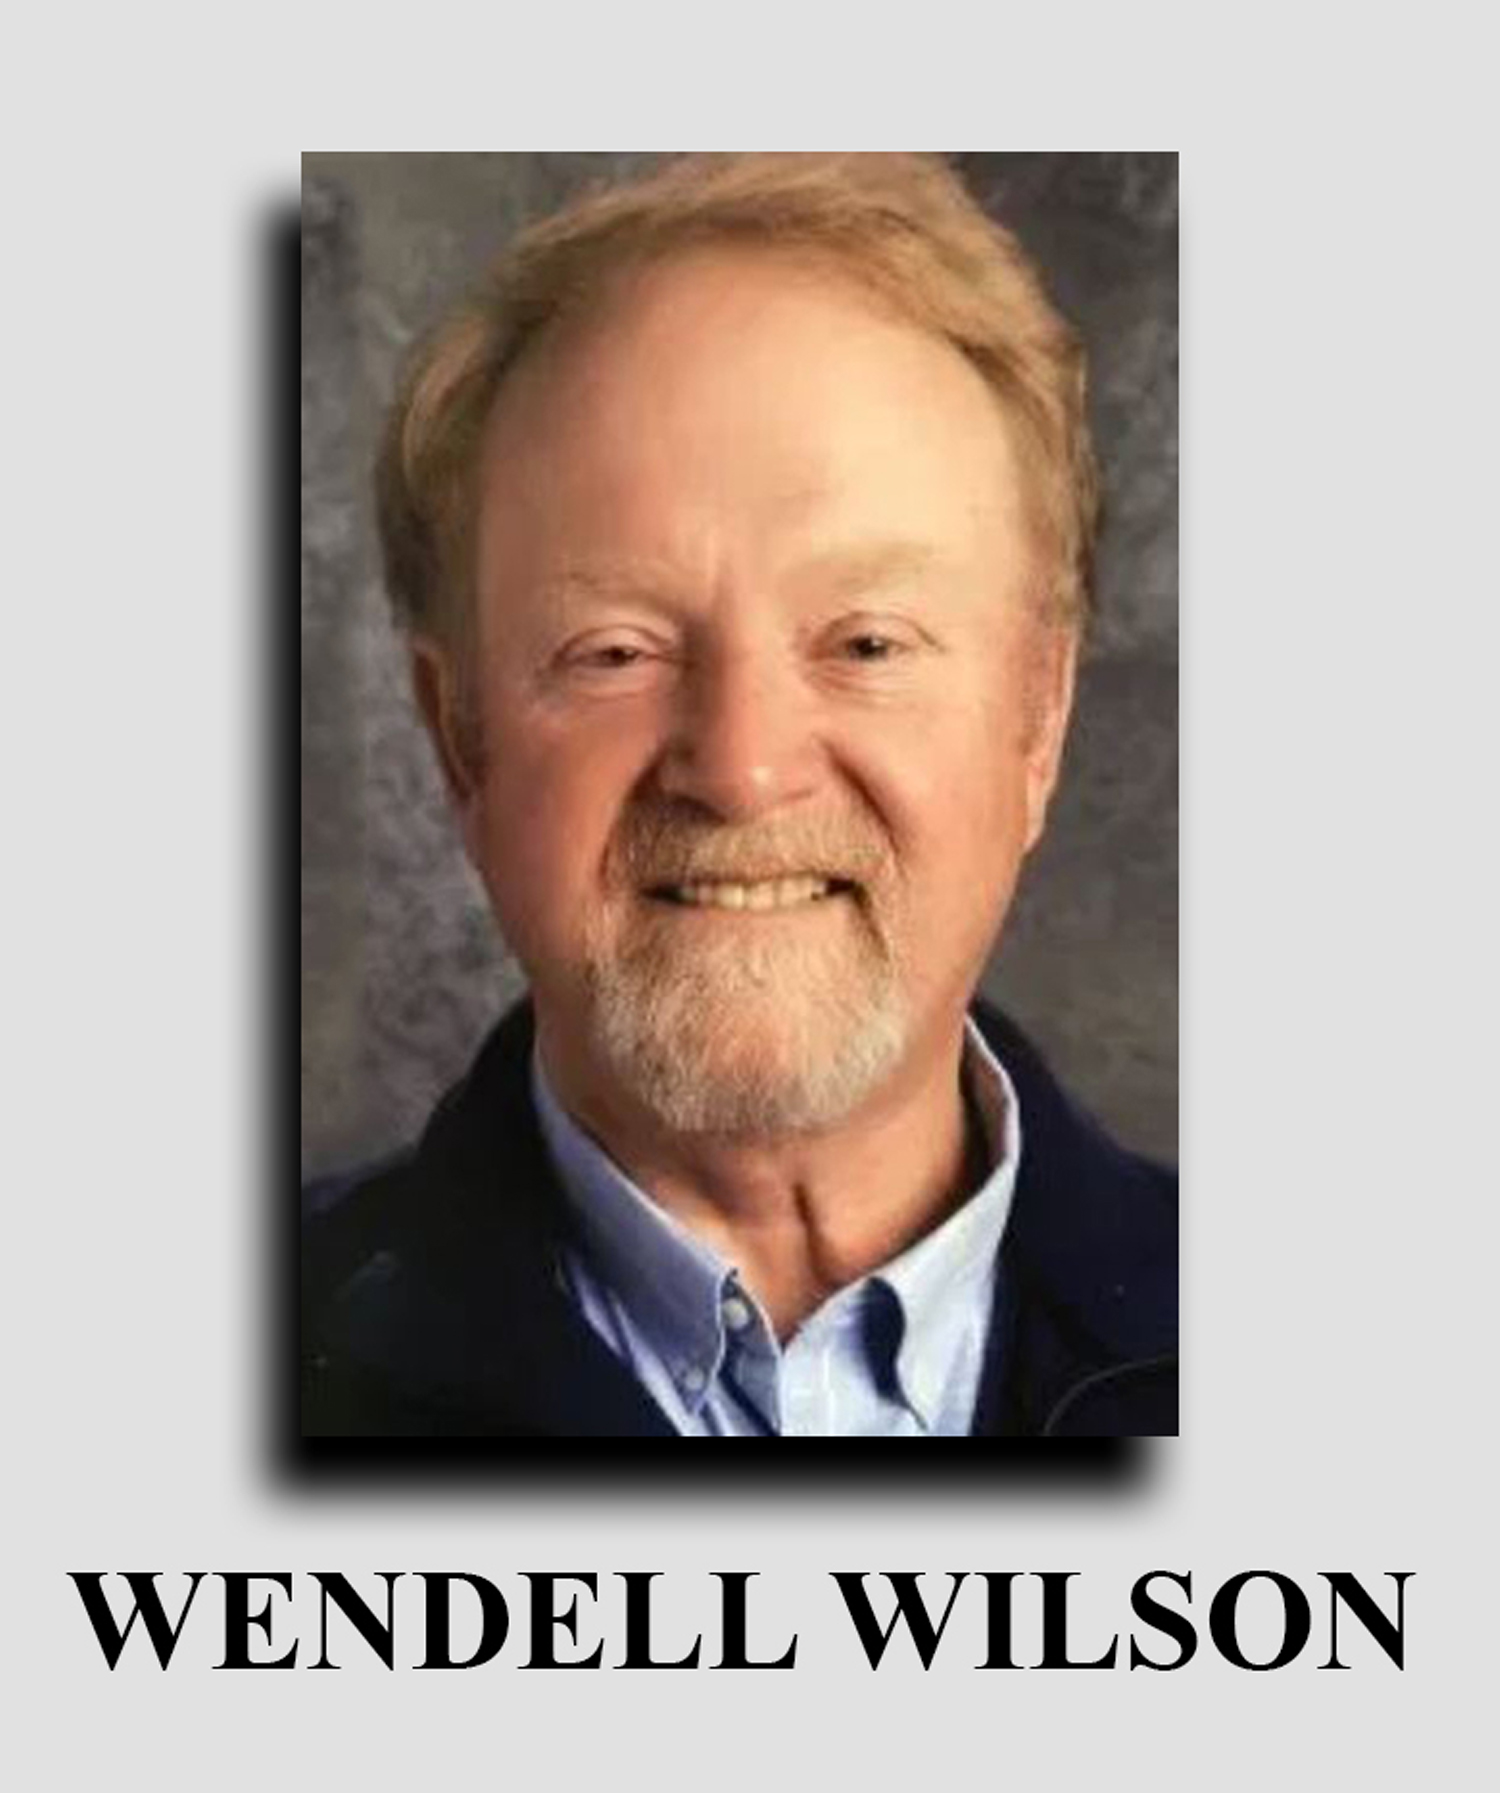 Wendell Wilson